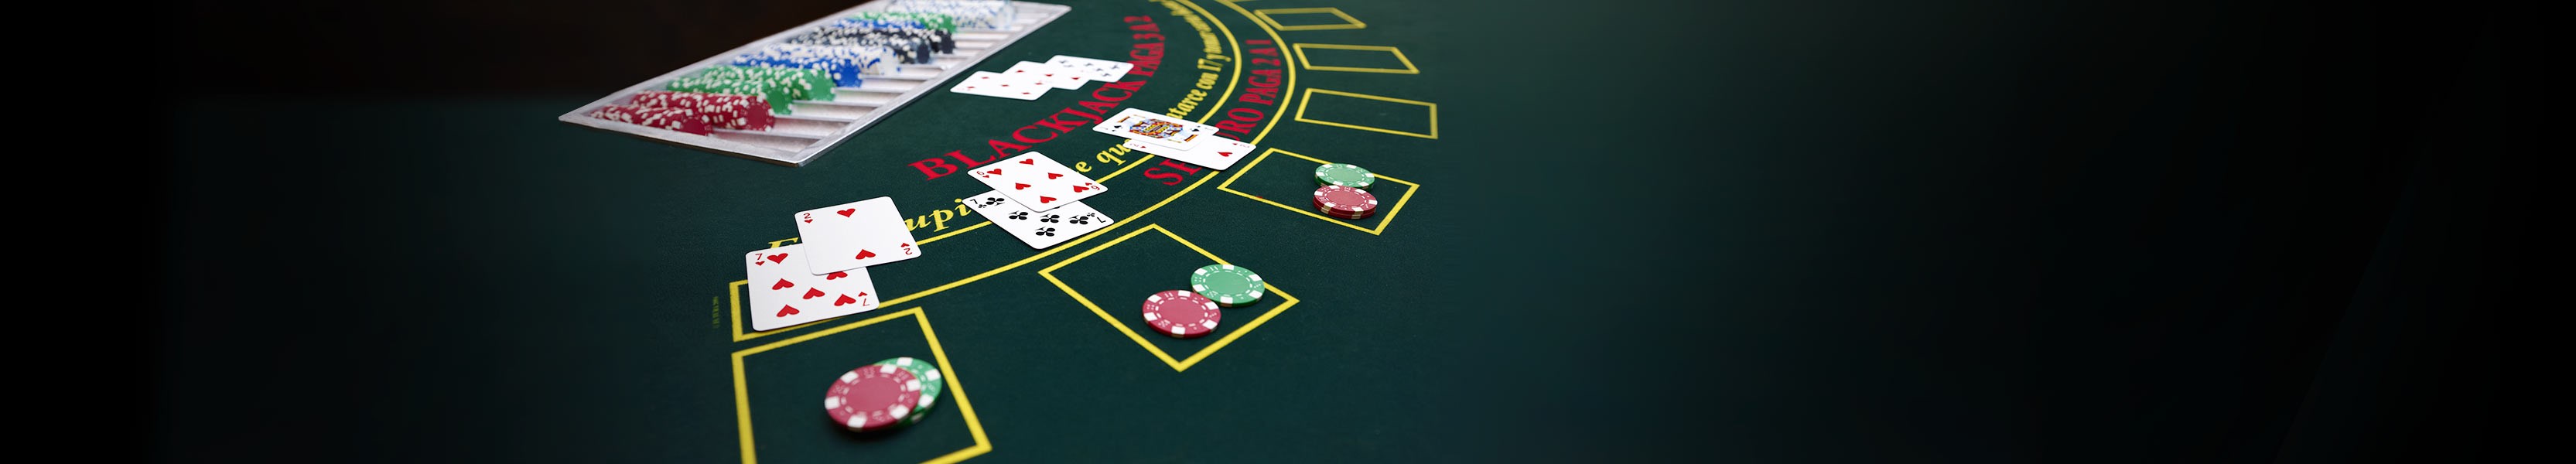 Pravidla kasinové hry blackjack 